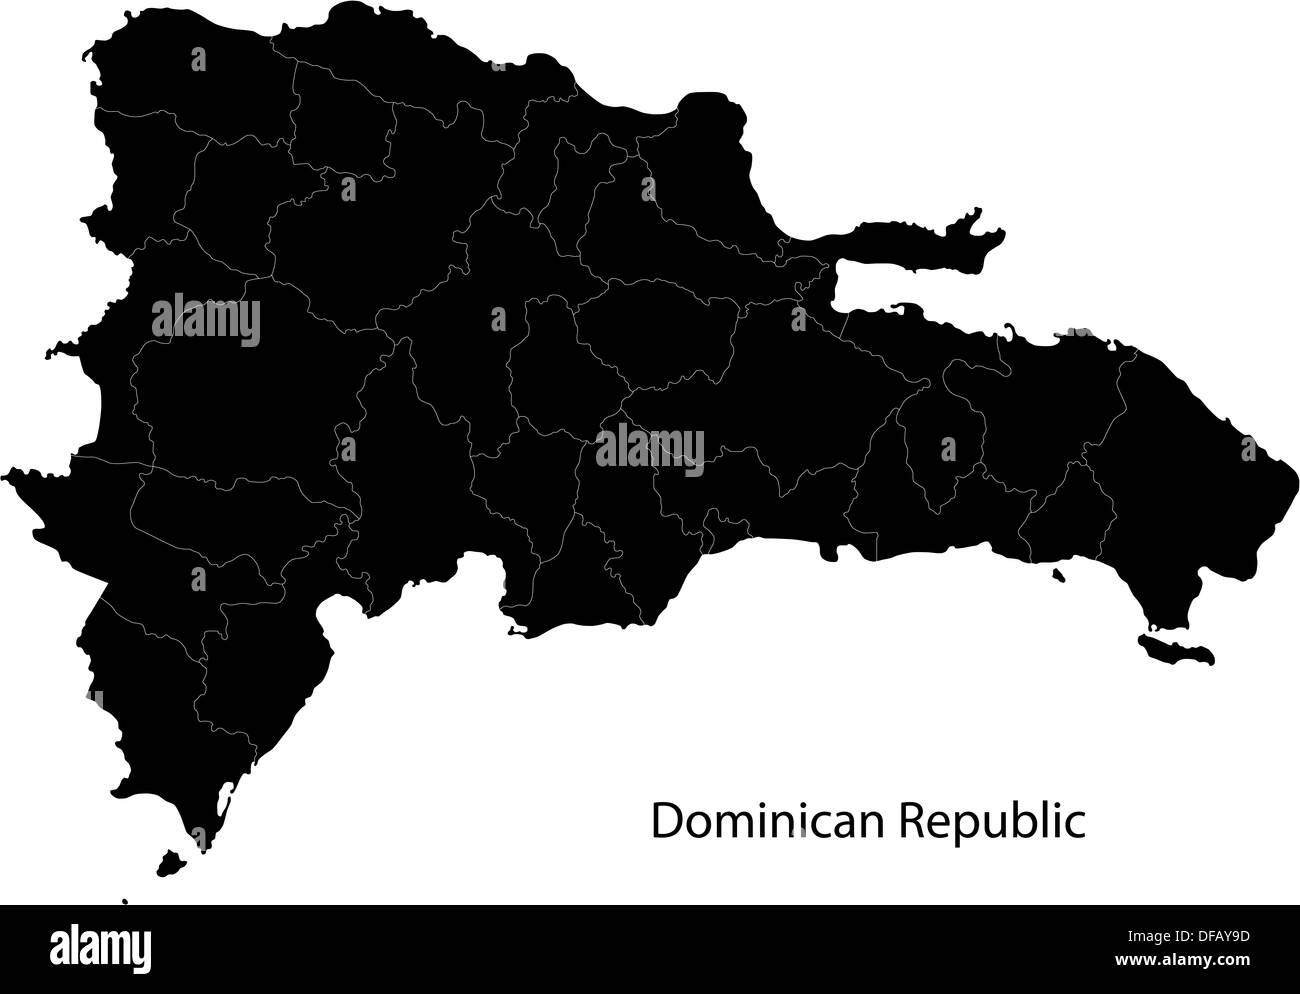 Black Dominican Republic map Stock Photo